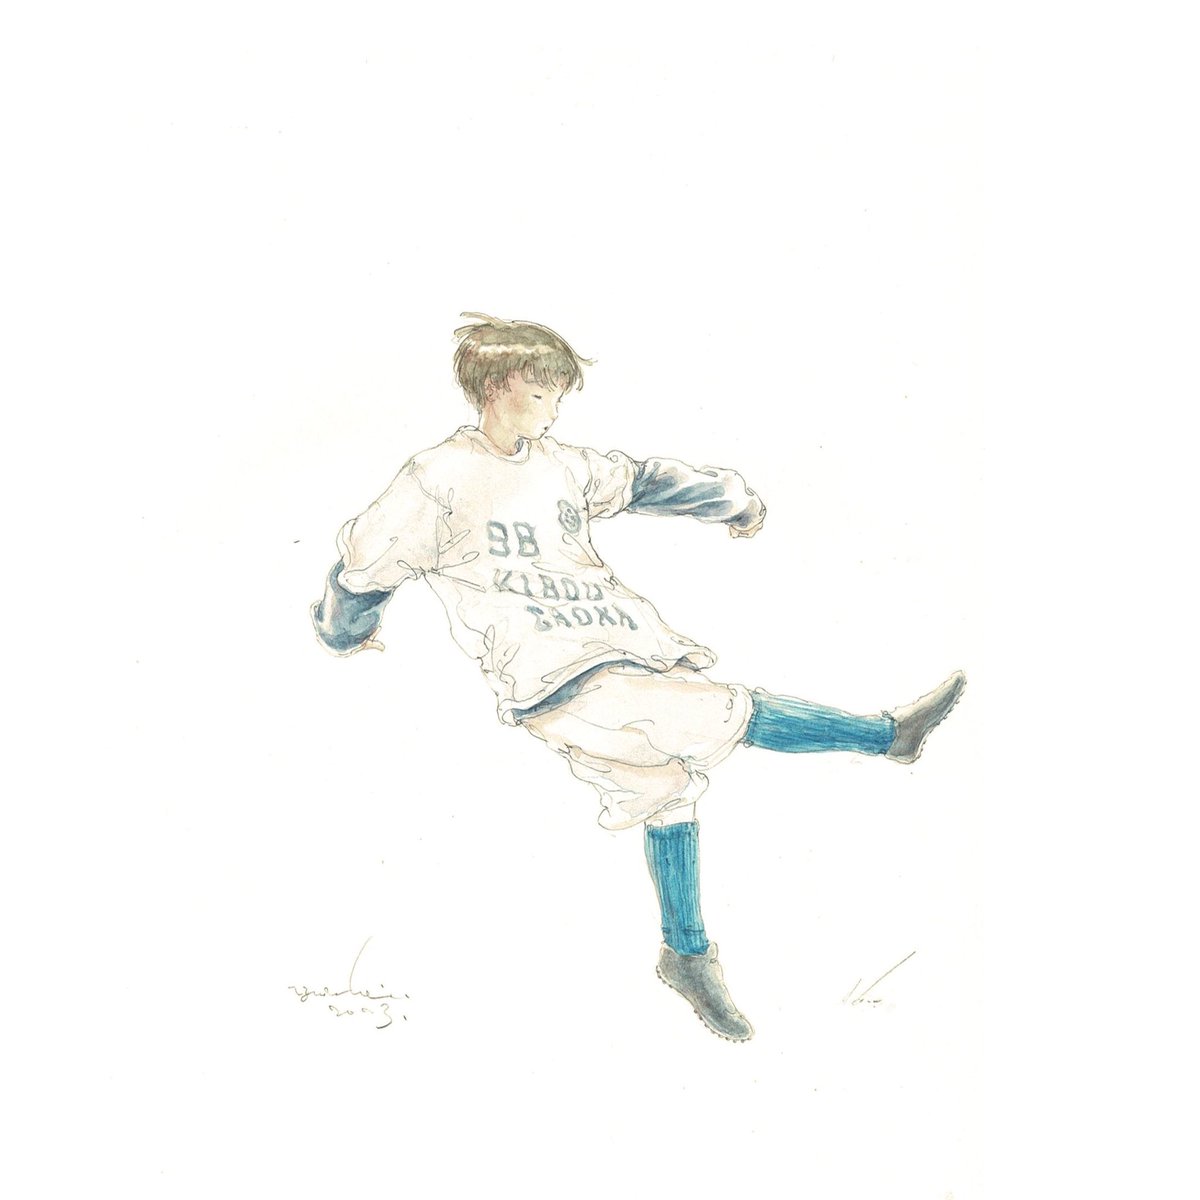 「はじめてゴールをきめた日。 」|sano yuichiのイラスト